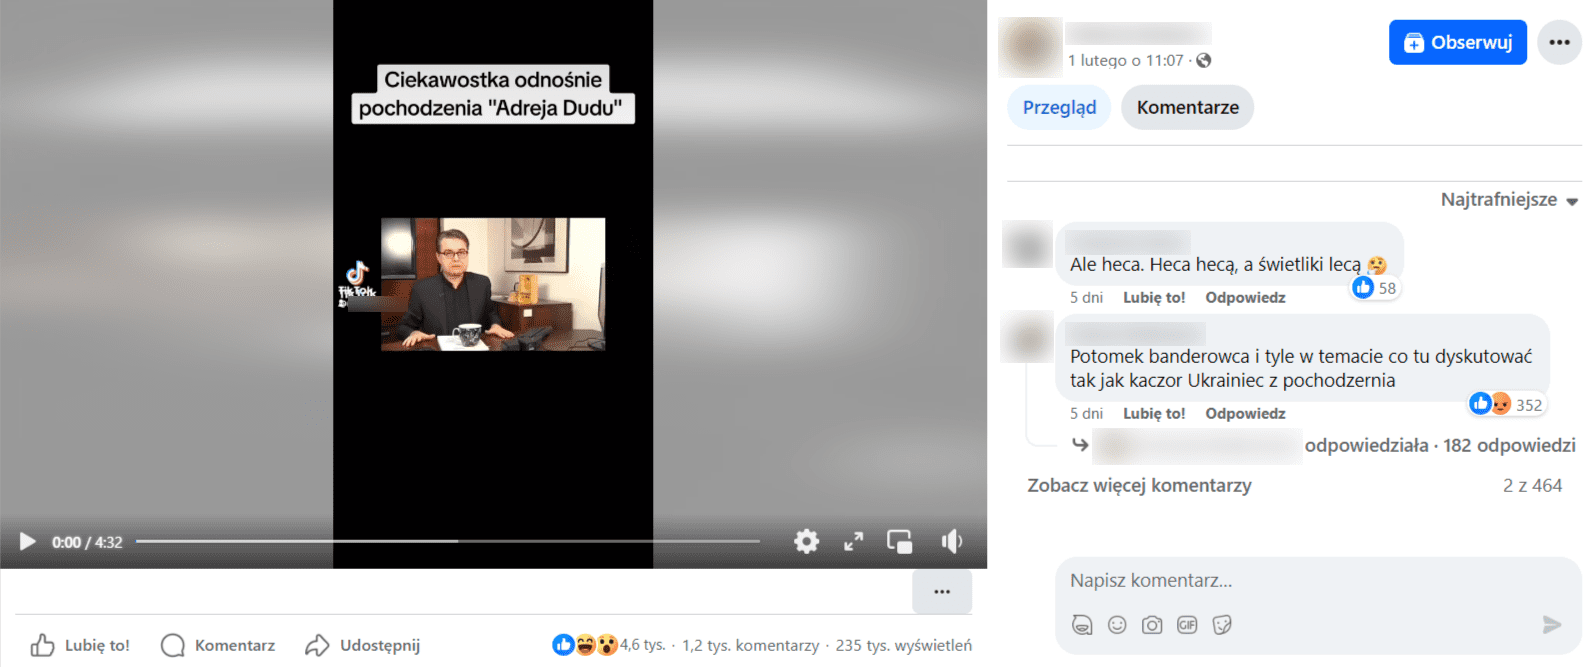 Zrzut ekranu z posta na Facebooku. Mężczyzna siedzący za biurkiem. Na filmie napisano „Ciekawostka odnośnie pochodzenia »Adreja Dudu«”. 4,6 tys. reakcji, 1,2 tys. komentarzy, 235 tys. wyświetleń. 